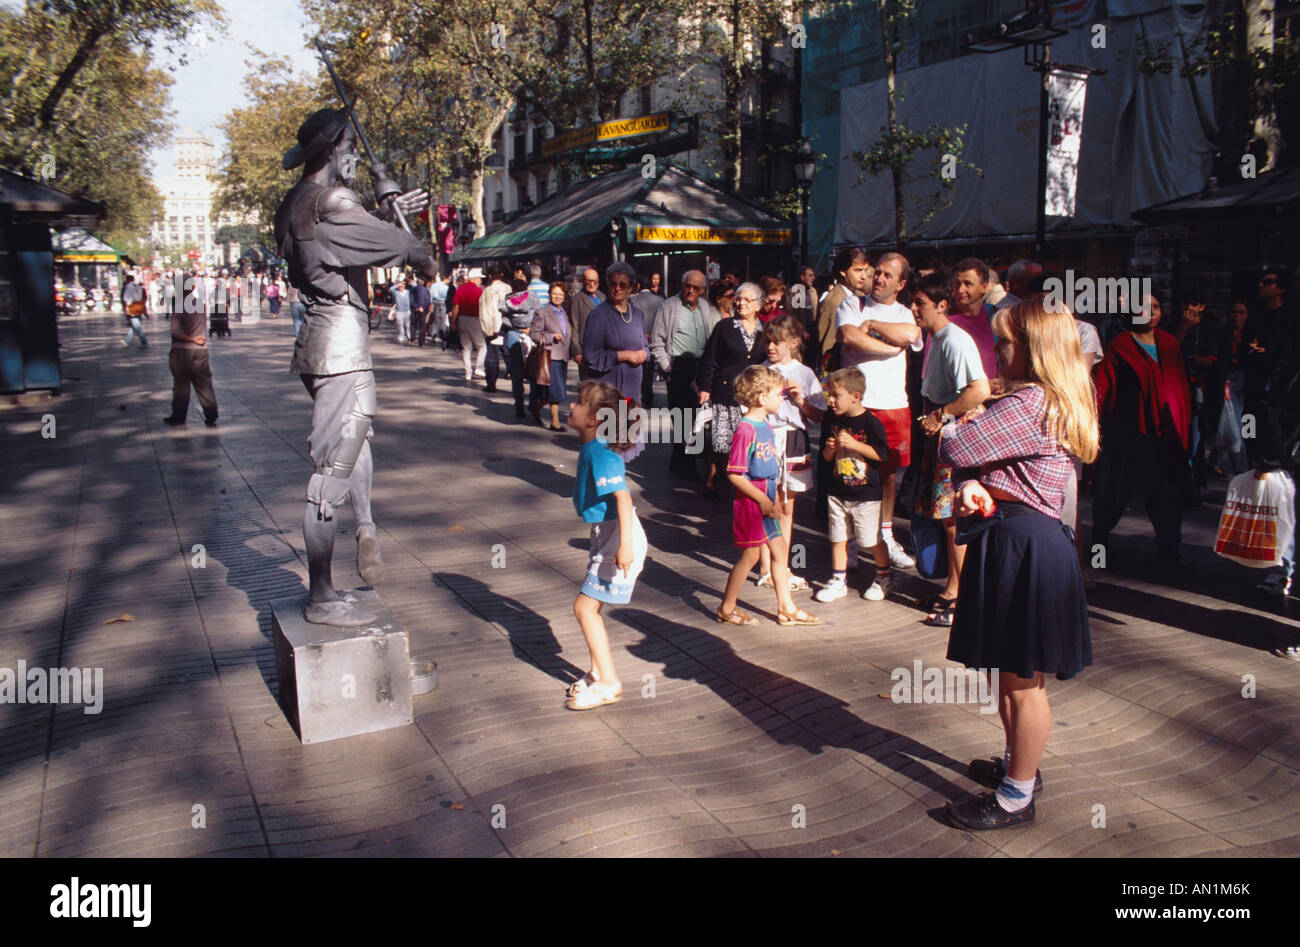 Crowd of people walking along street in Las Ramblas, Barcelona. Stock Photo